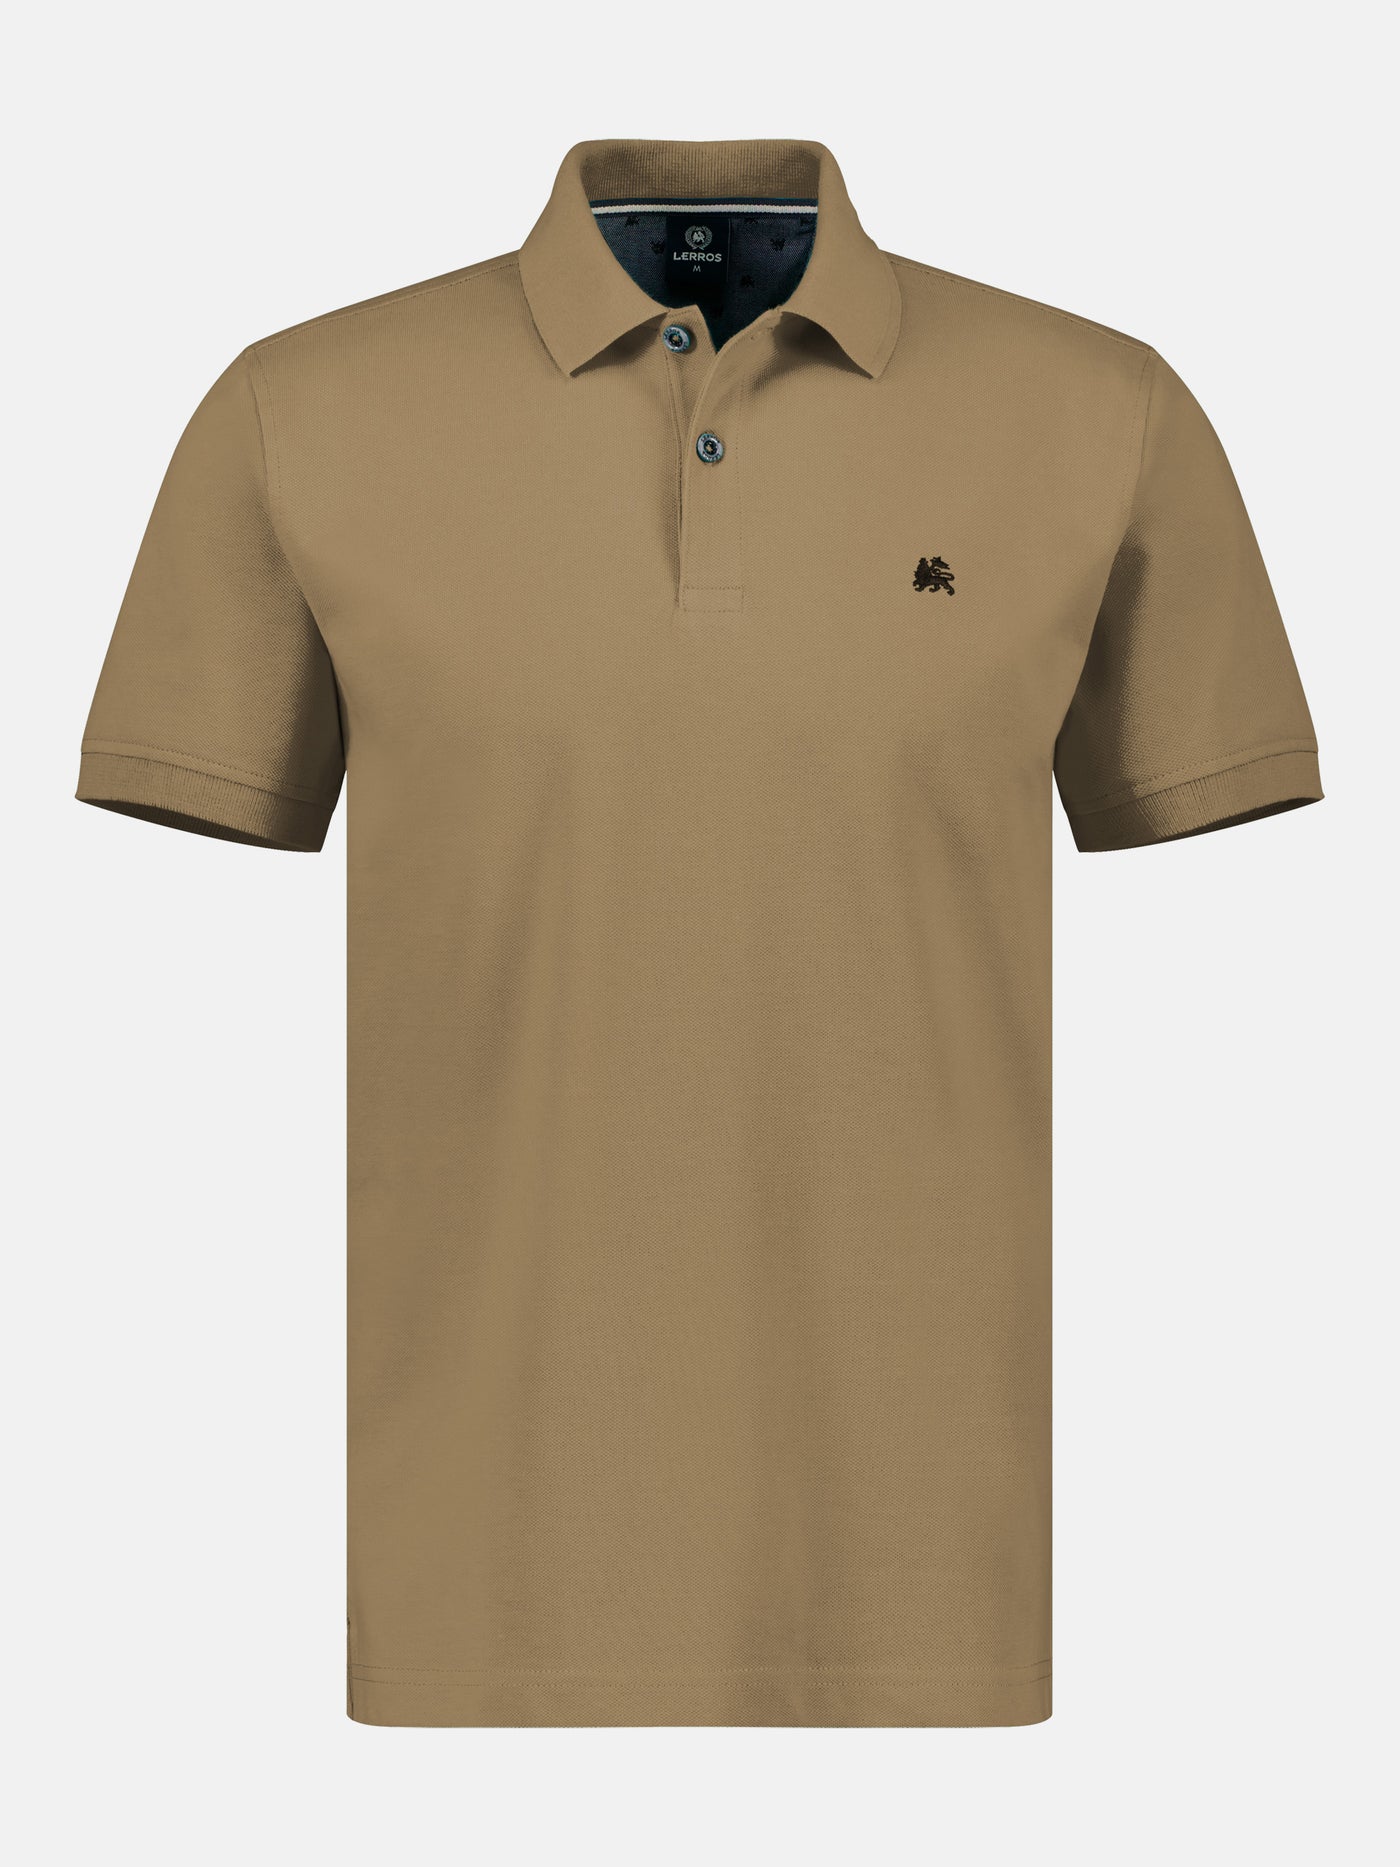 Basic polo shirt for men